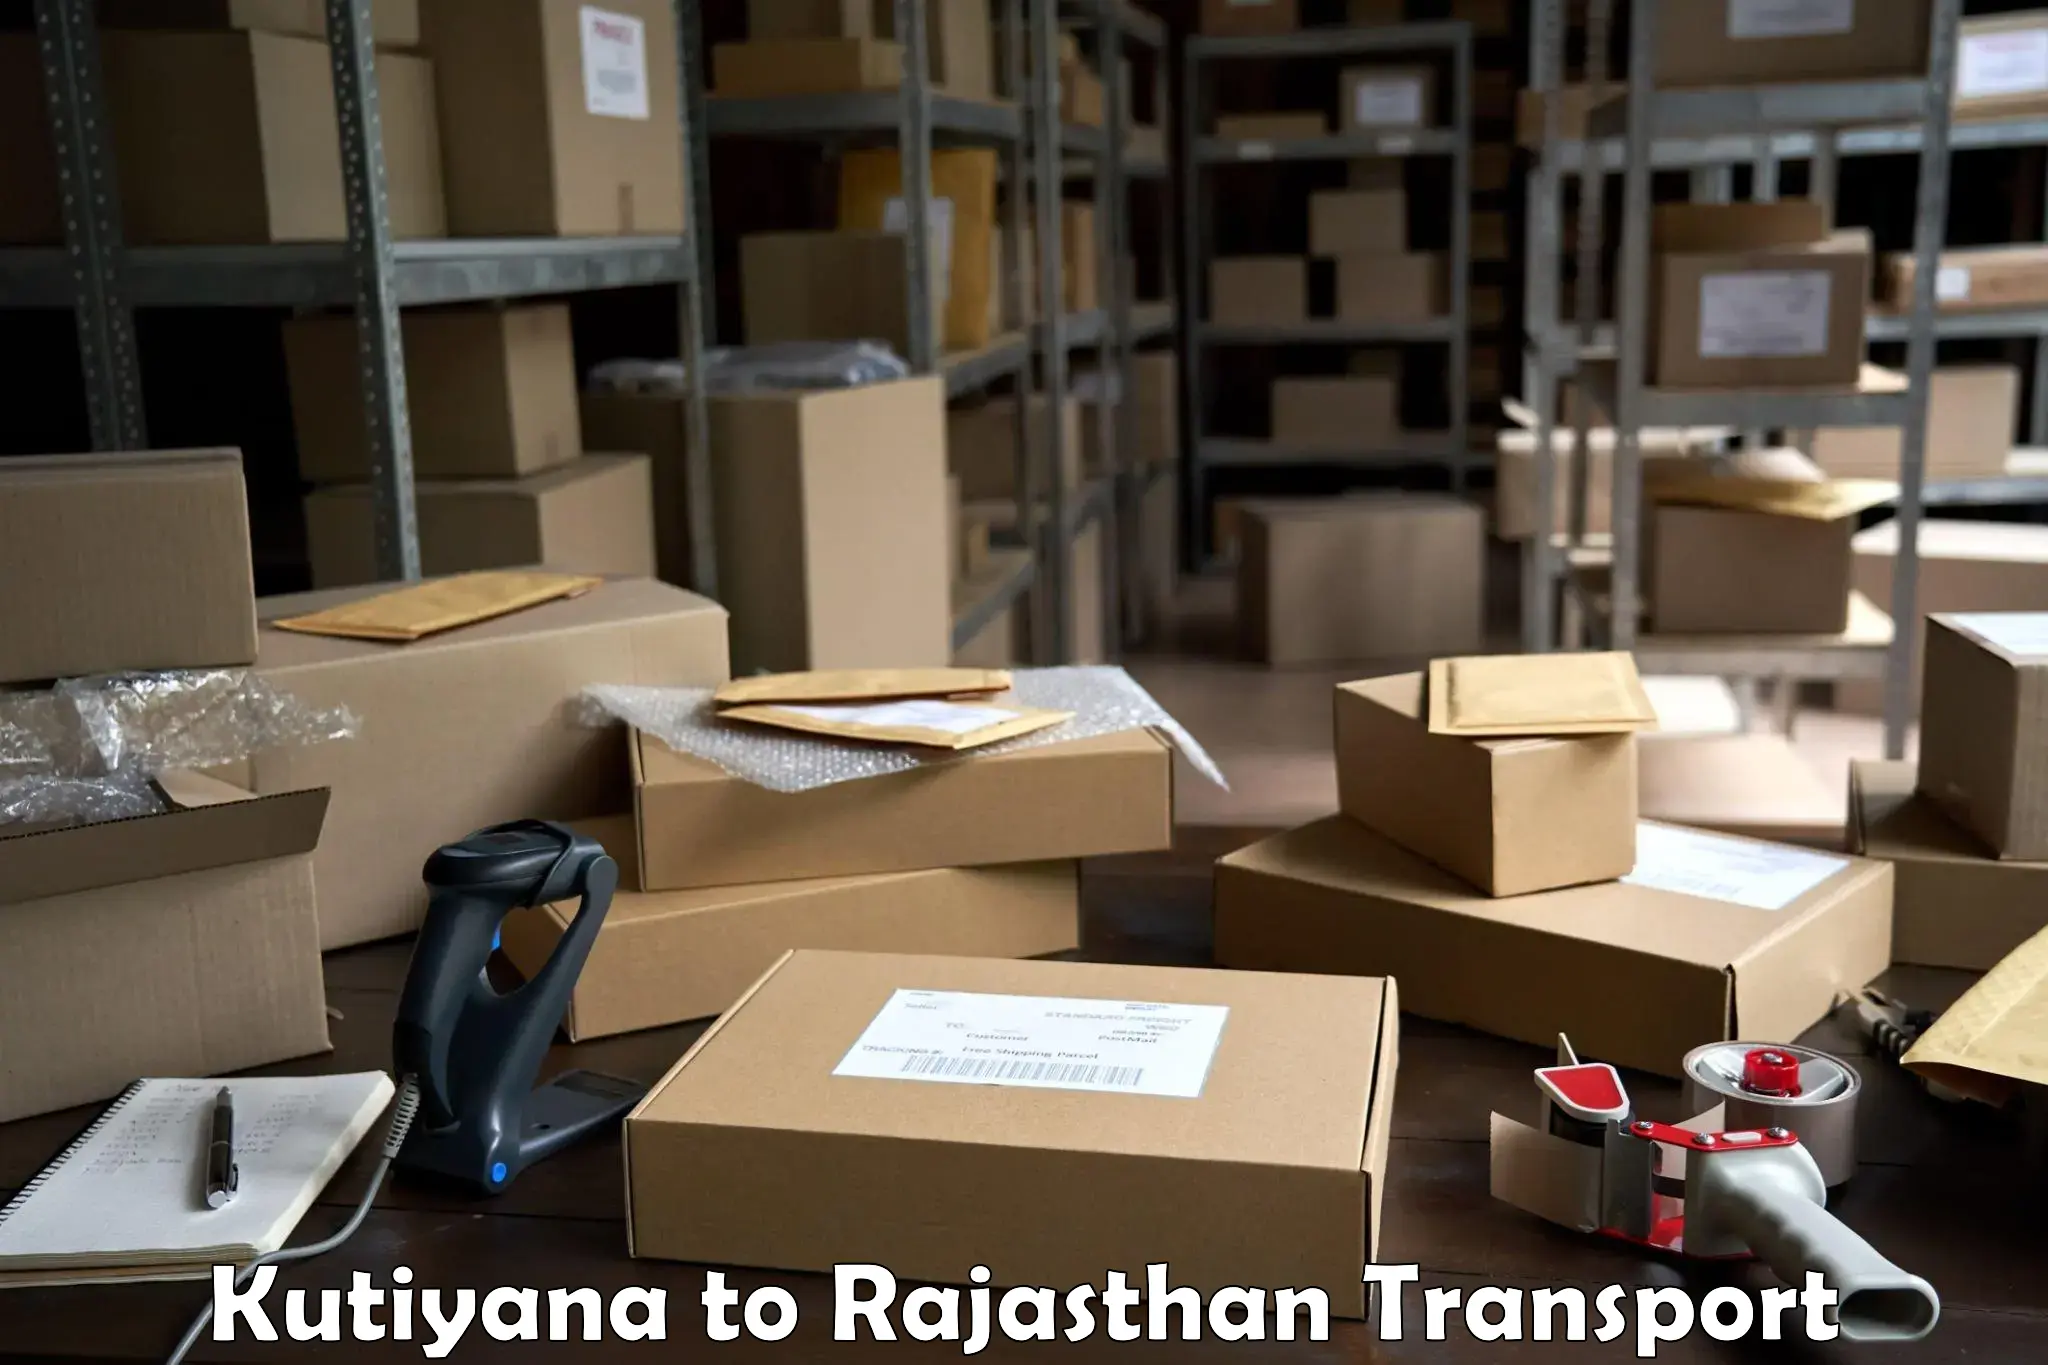 Shipping partner Kutiyana to Banswara